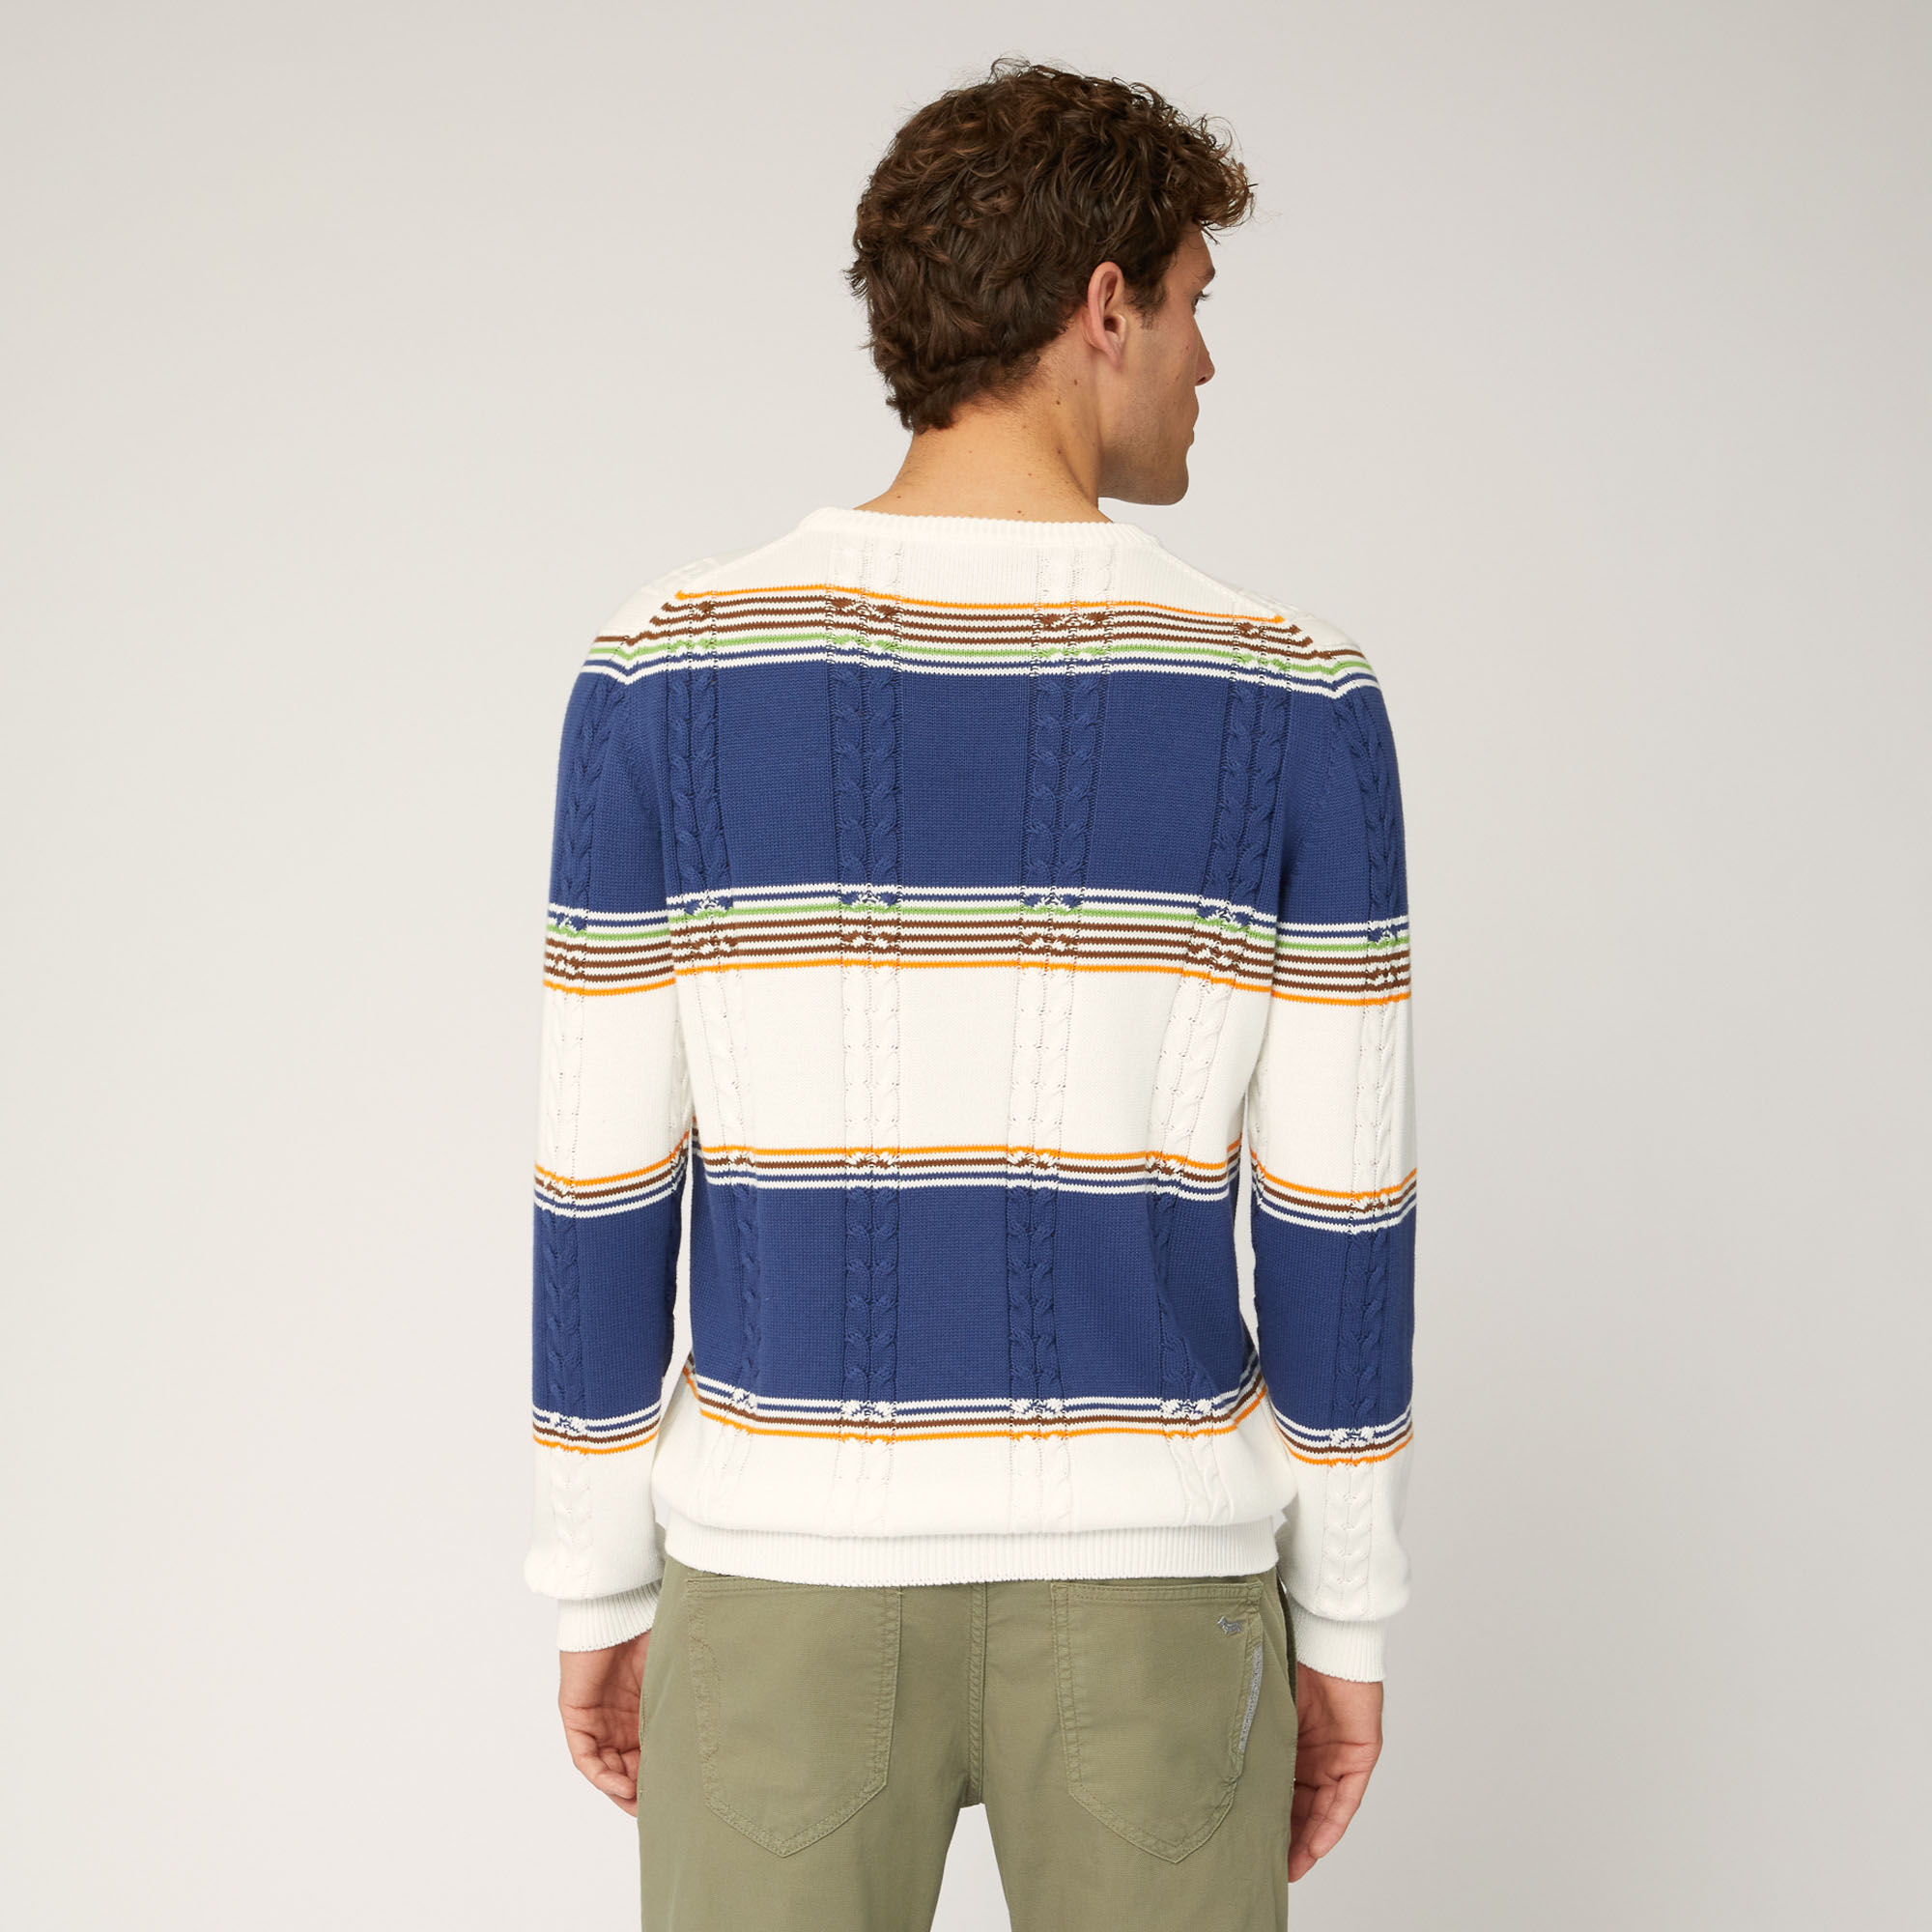 Jersey de algodón orgánico con cuello redondo y diseño trenzado con rayas